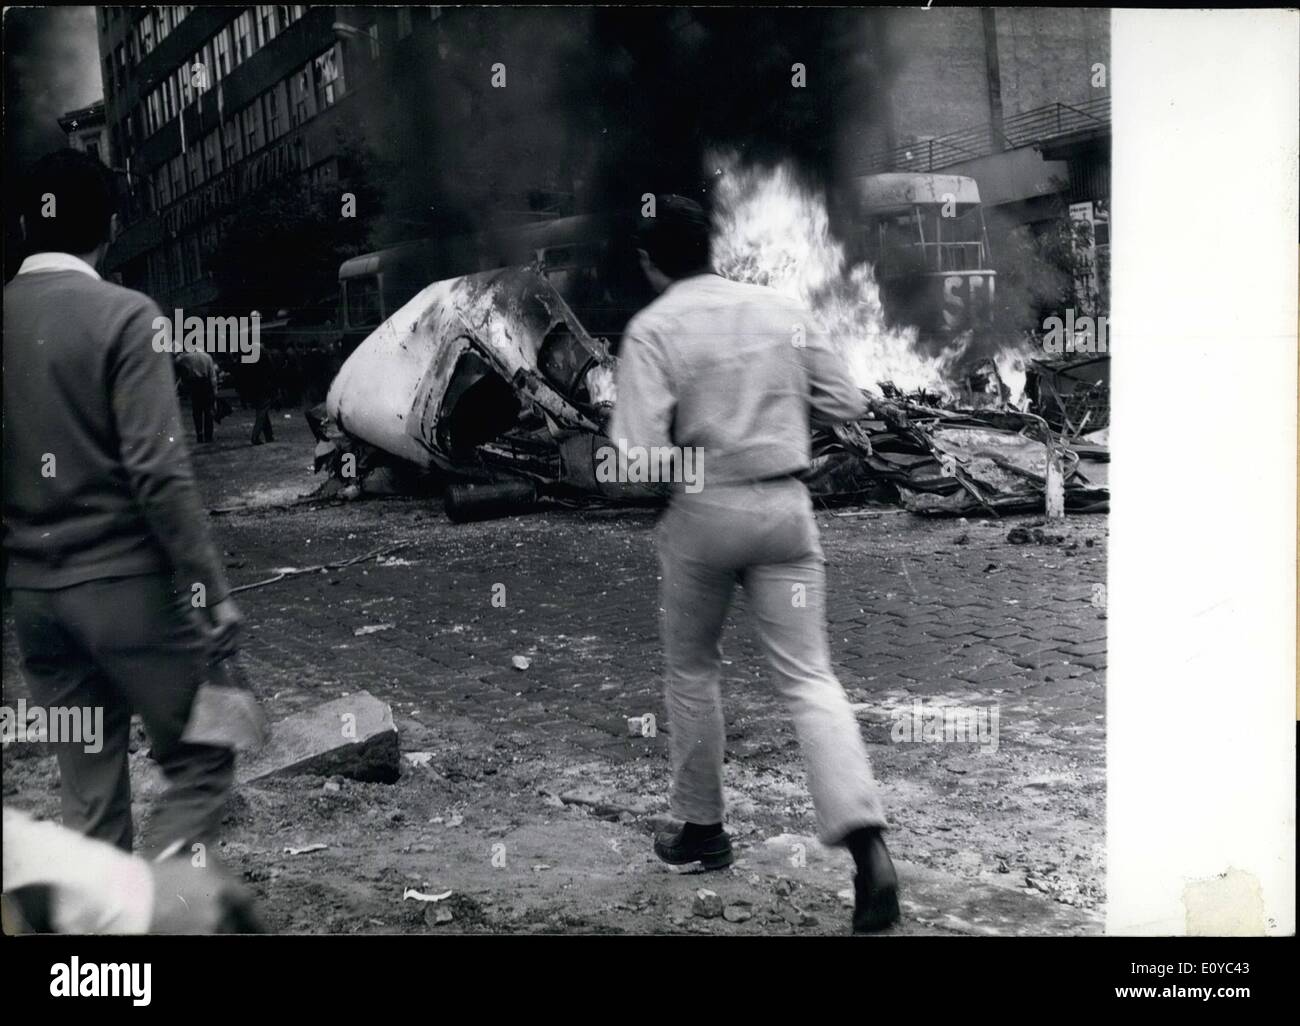 8. August 1969 - CSSR von östlichen Truppen besetzt: in der Nacht vom 20. zum 21. August 1968 besetzten Truppen der Warschauer-Pakt-Staaten Tschechoslowakei. Jeder, wo das Land und vor allem in Prag die Bevölkerung gegen die Besatzung unter Beweis gestellt. Foto zeigt Burning Car in Prag. Stockfoto